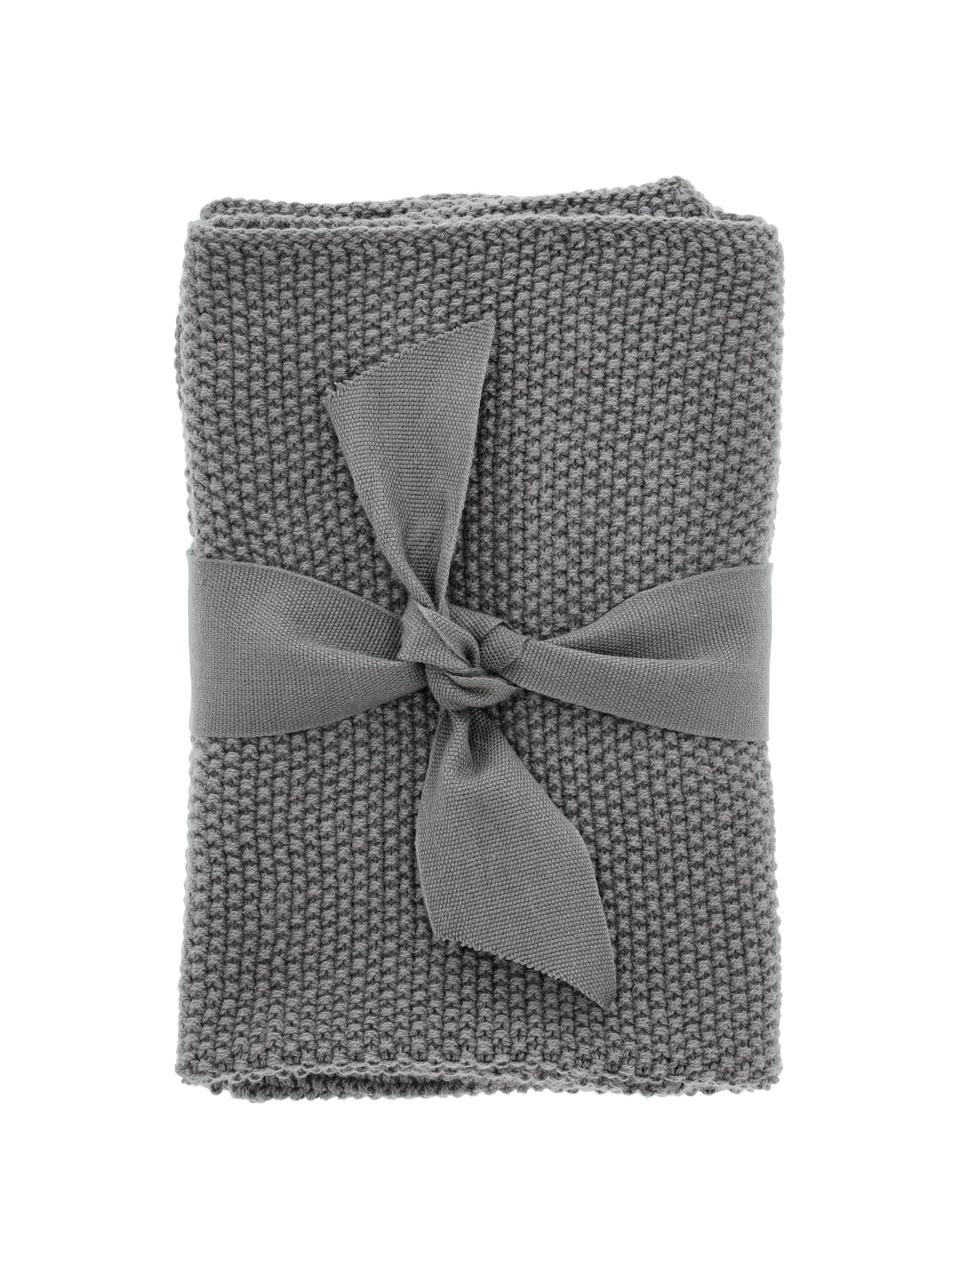 Ściereczka z bawełny Soft, 3 szt., 100% bawełna, Szary, S 29 x D 30 cm